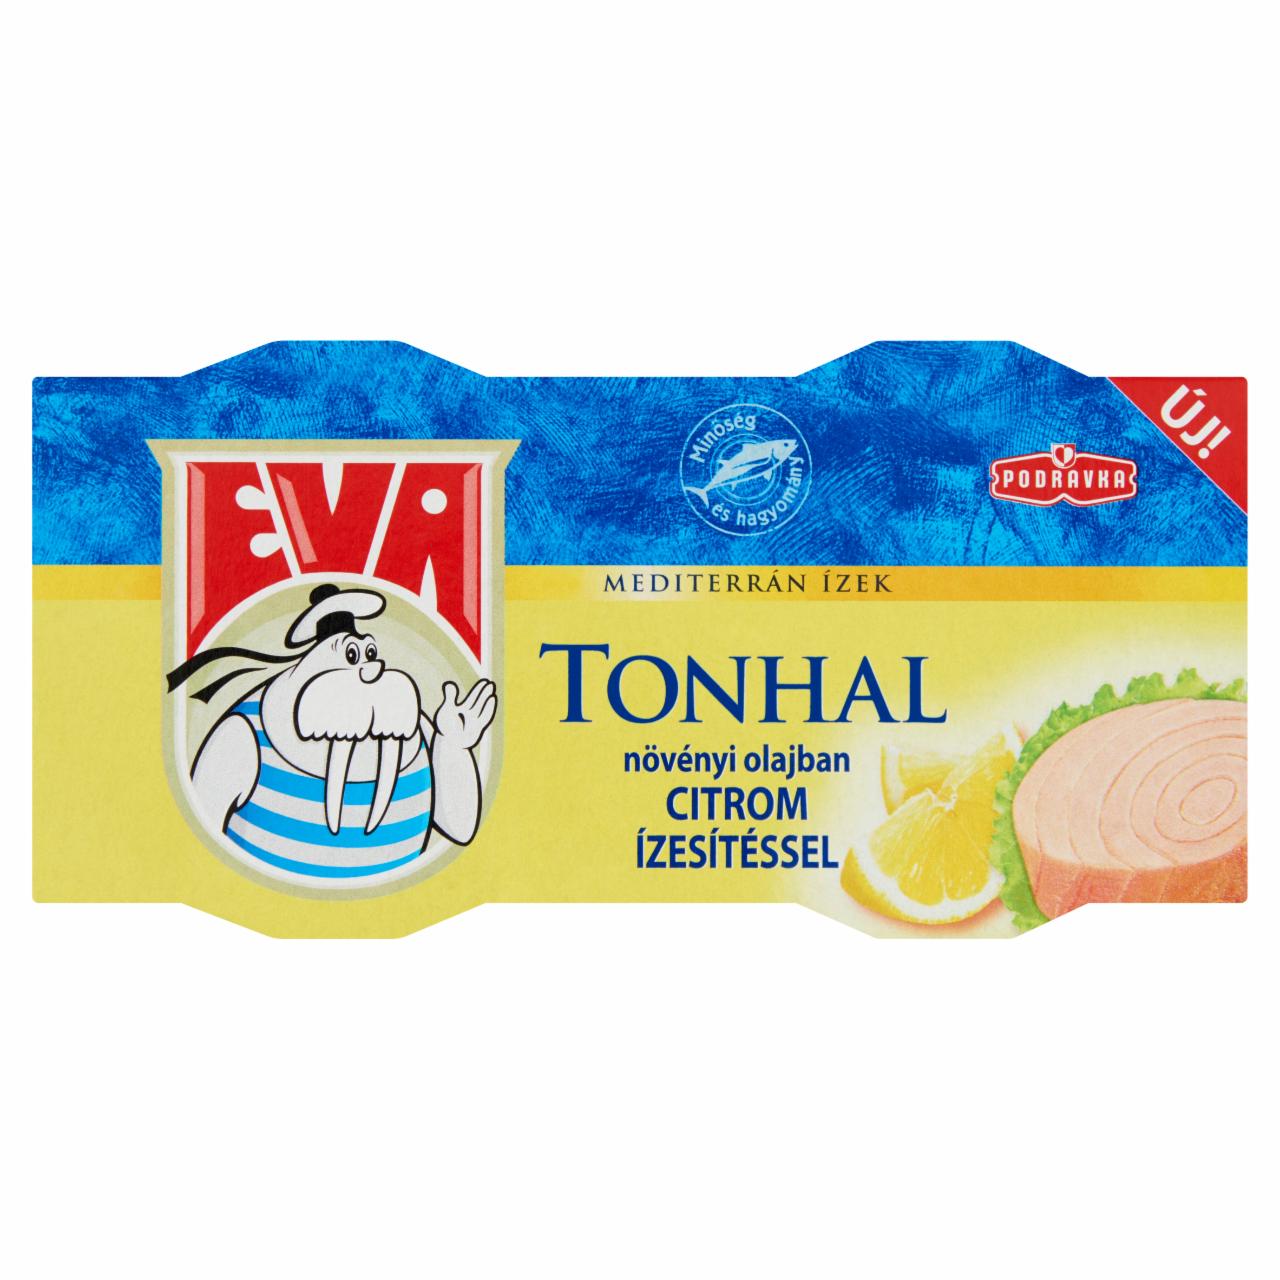 Képek - Podravka Eva tonhal növényi olajban citrom ízesítéssel 2 x 80 g